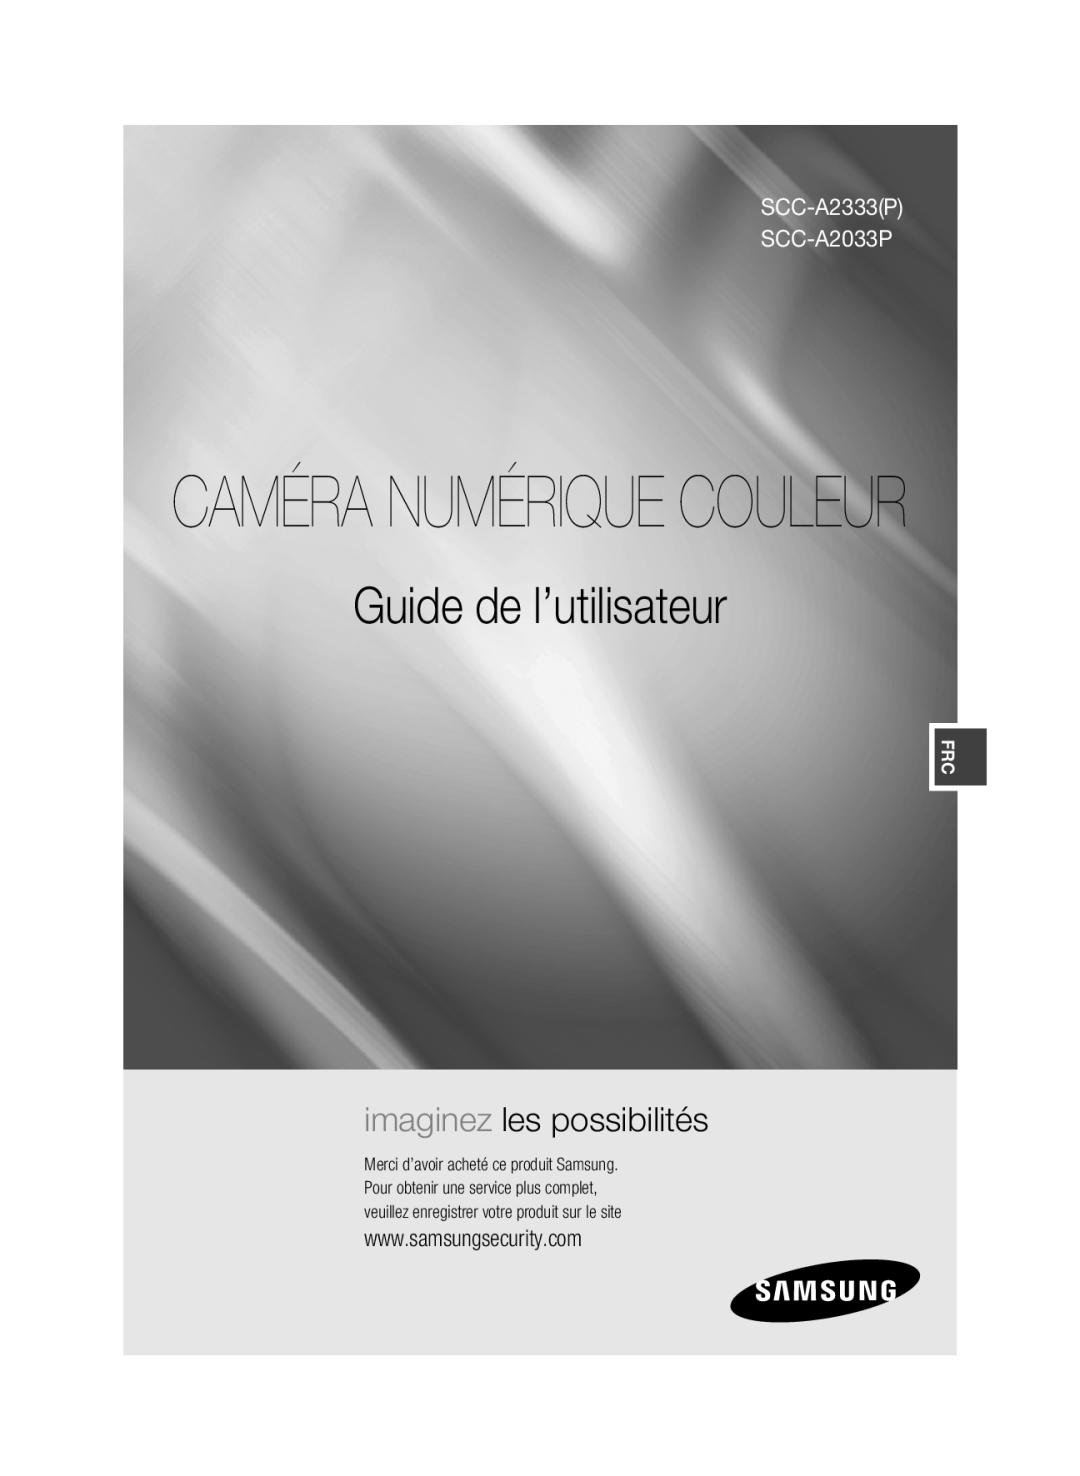 Samsung manual Caméra Numérique Couleur, Guide de l’utilisateur, imaginez les possibilités, SCC-A2333P SCC-A2033P 